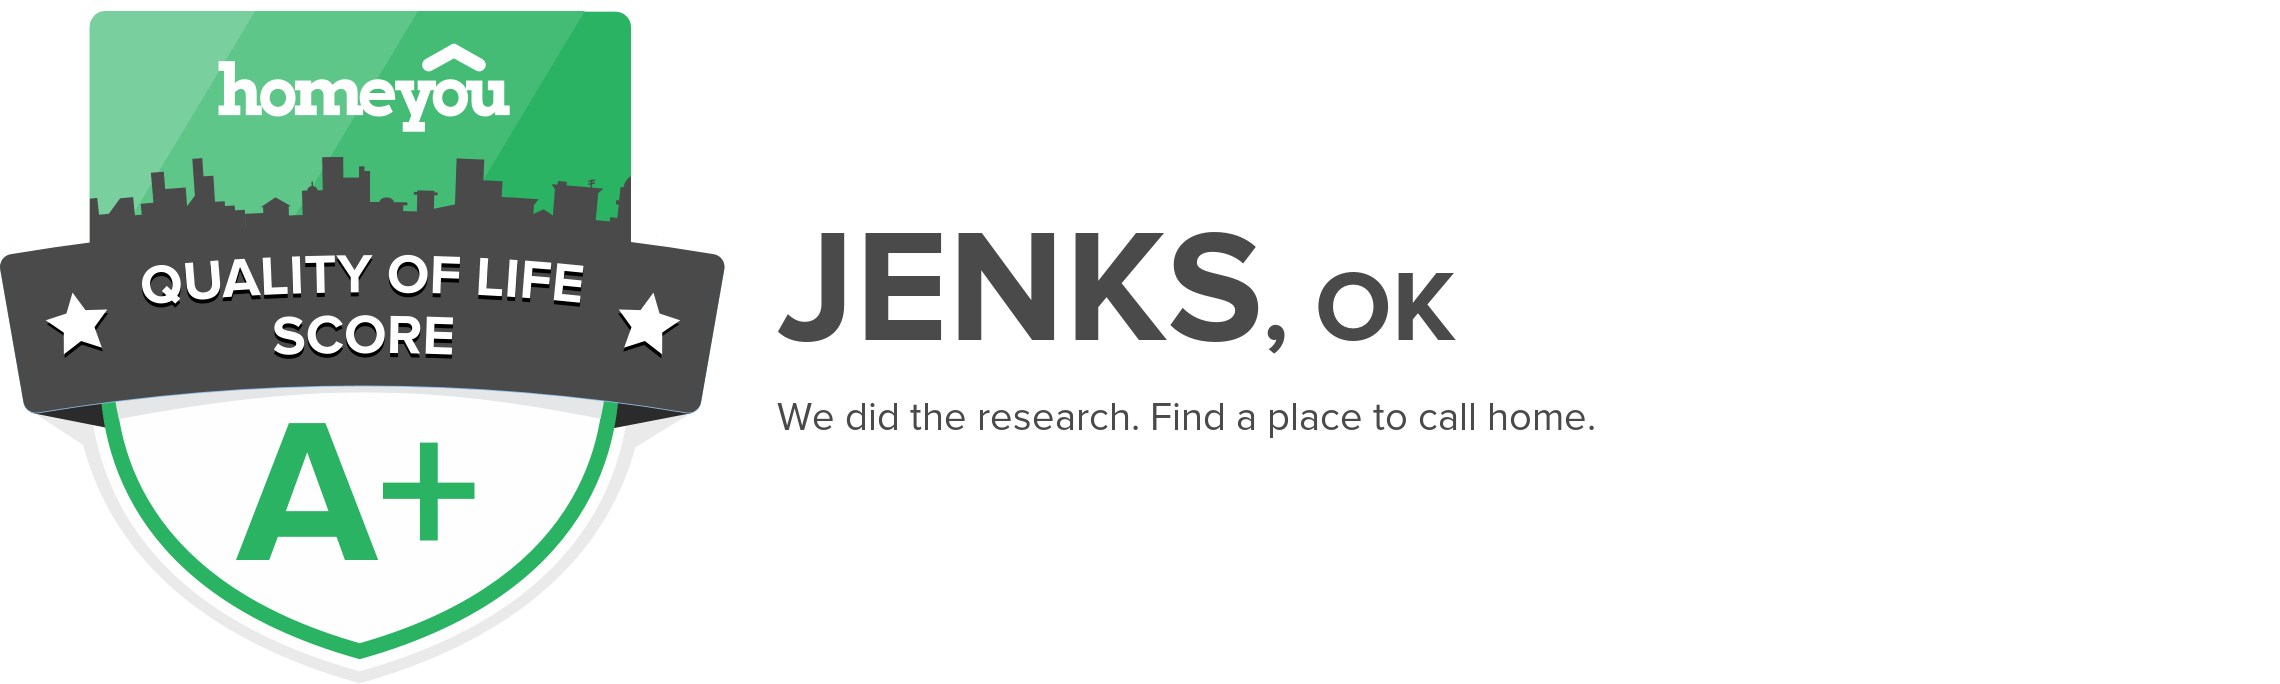 Jenks, OK